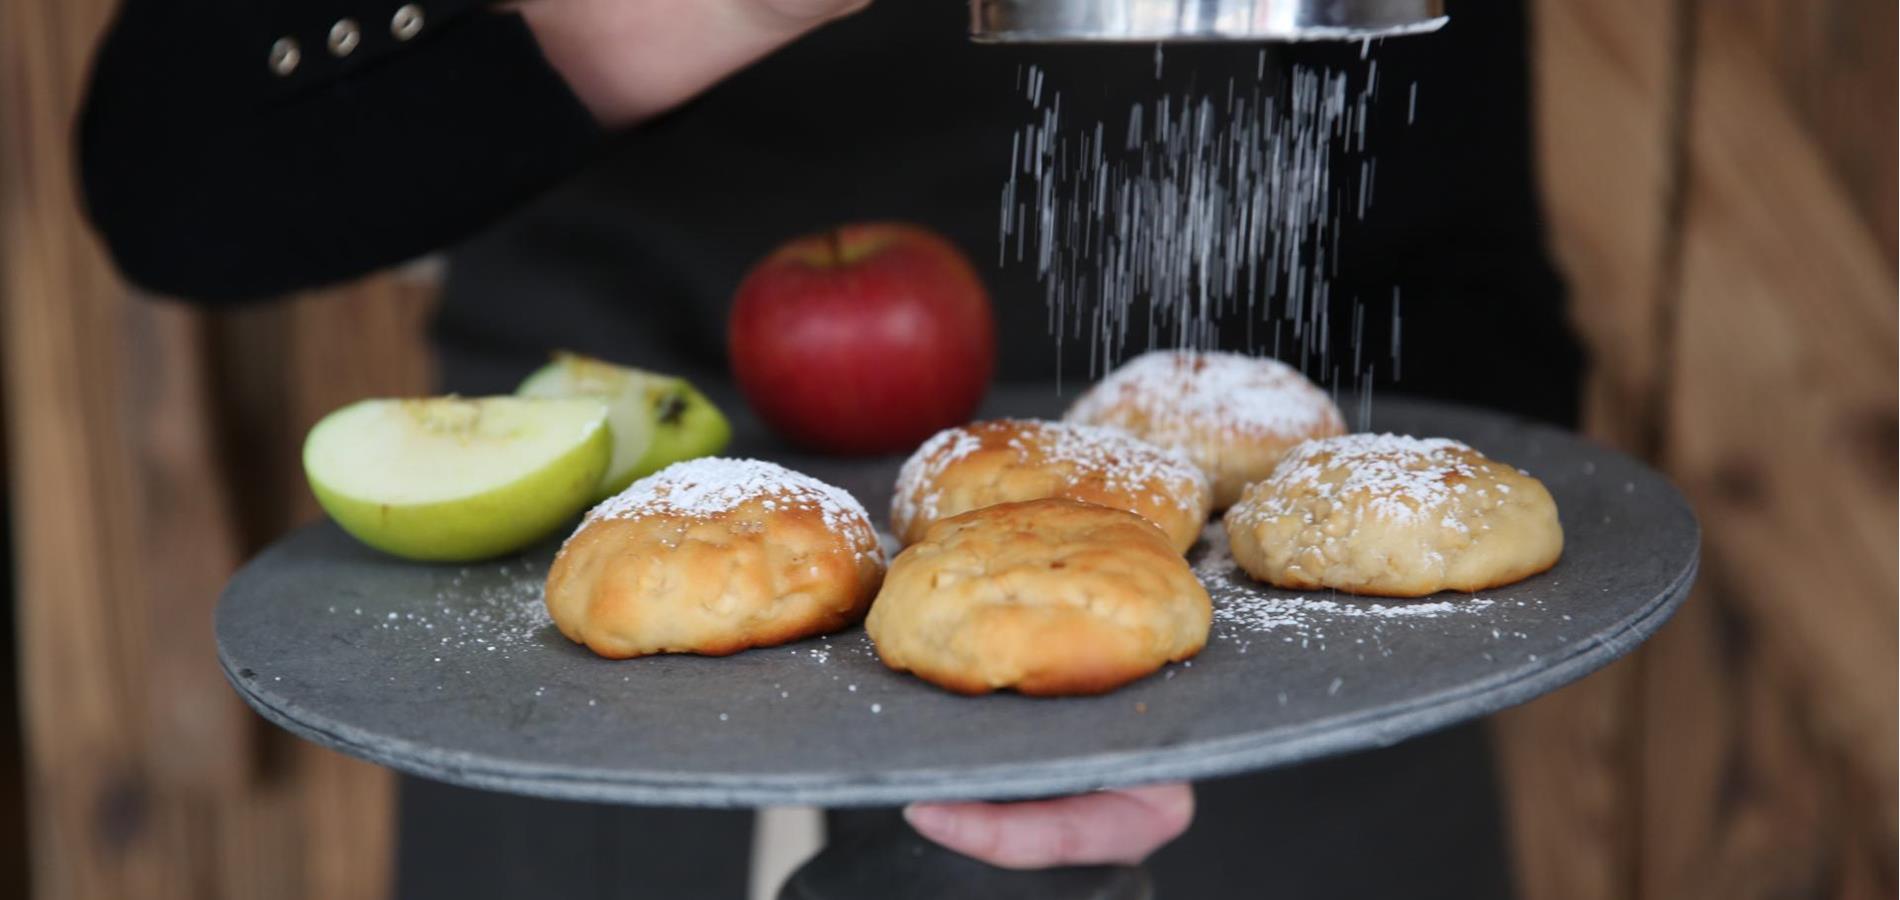 Apple biscuits (Epflpappelen)